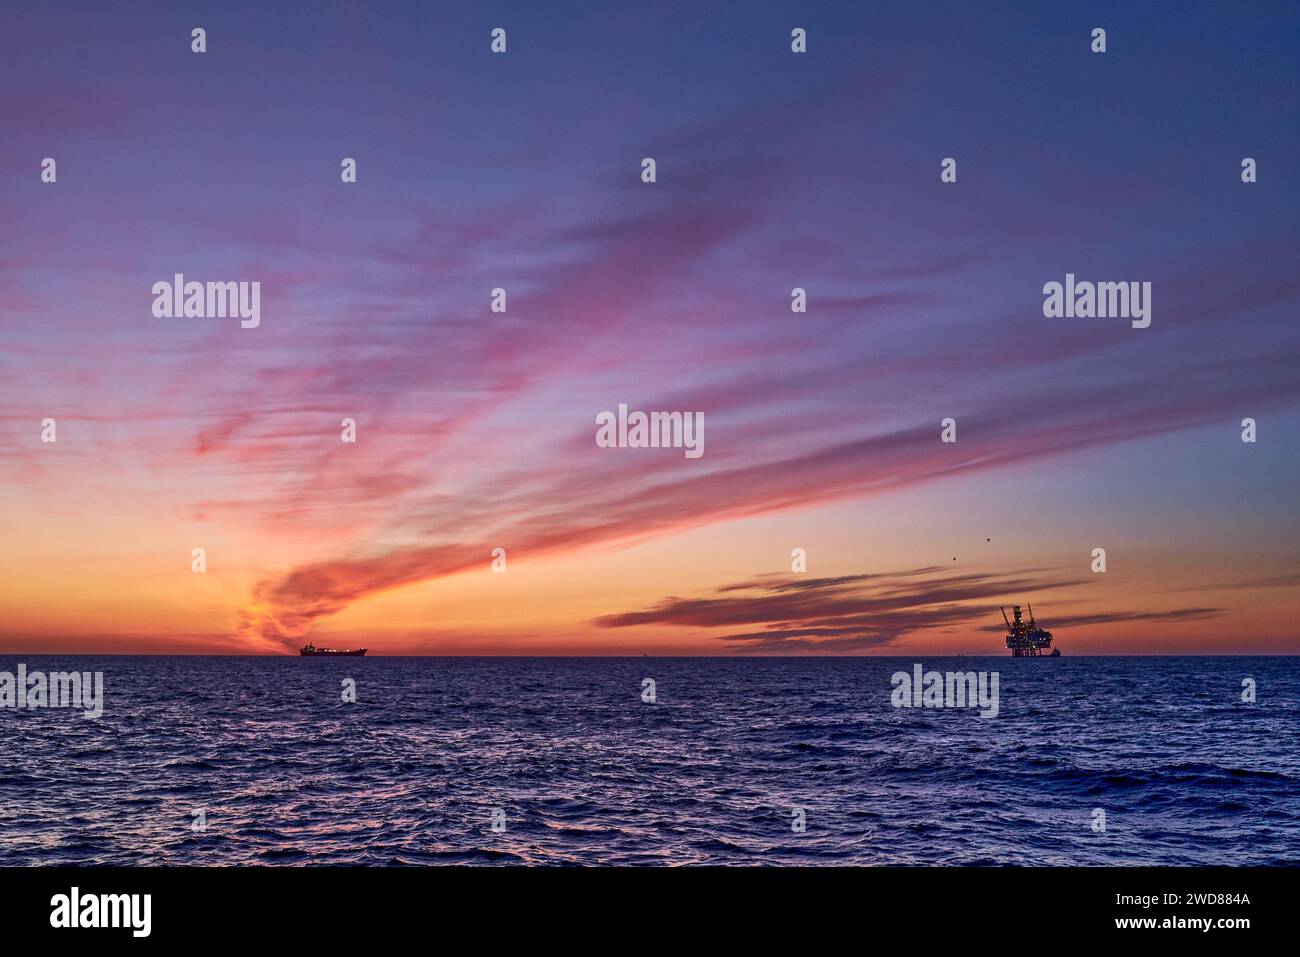 Beau lever de soleil dans la mer avec ciel coloré rose, jaune, orange et violet, océan bleu et silhouette d'une plate-forme de jackup à l'horizon. Banque D'Images